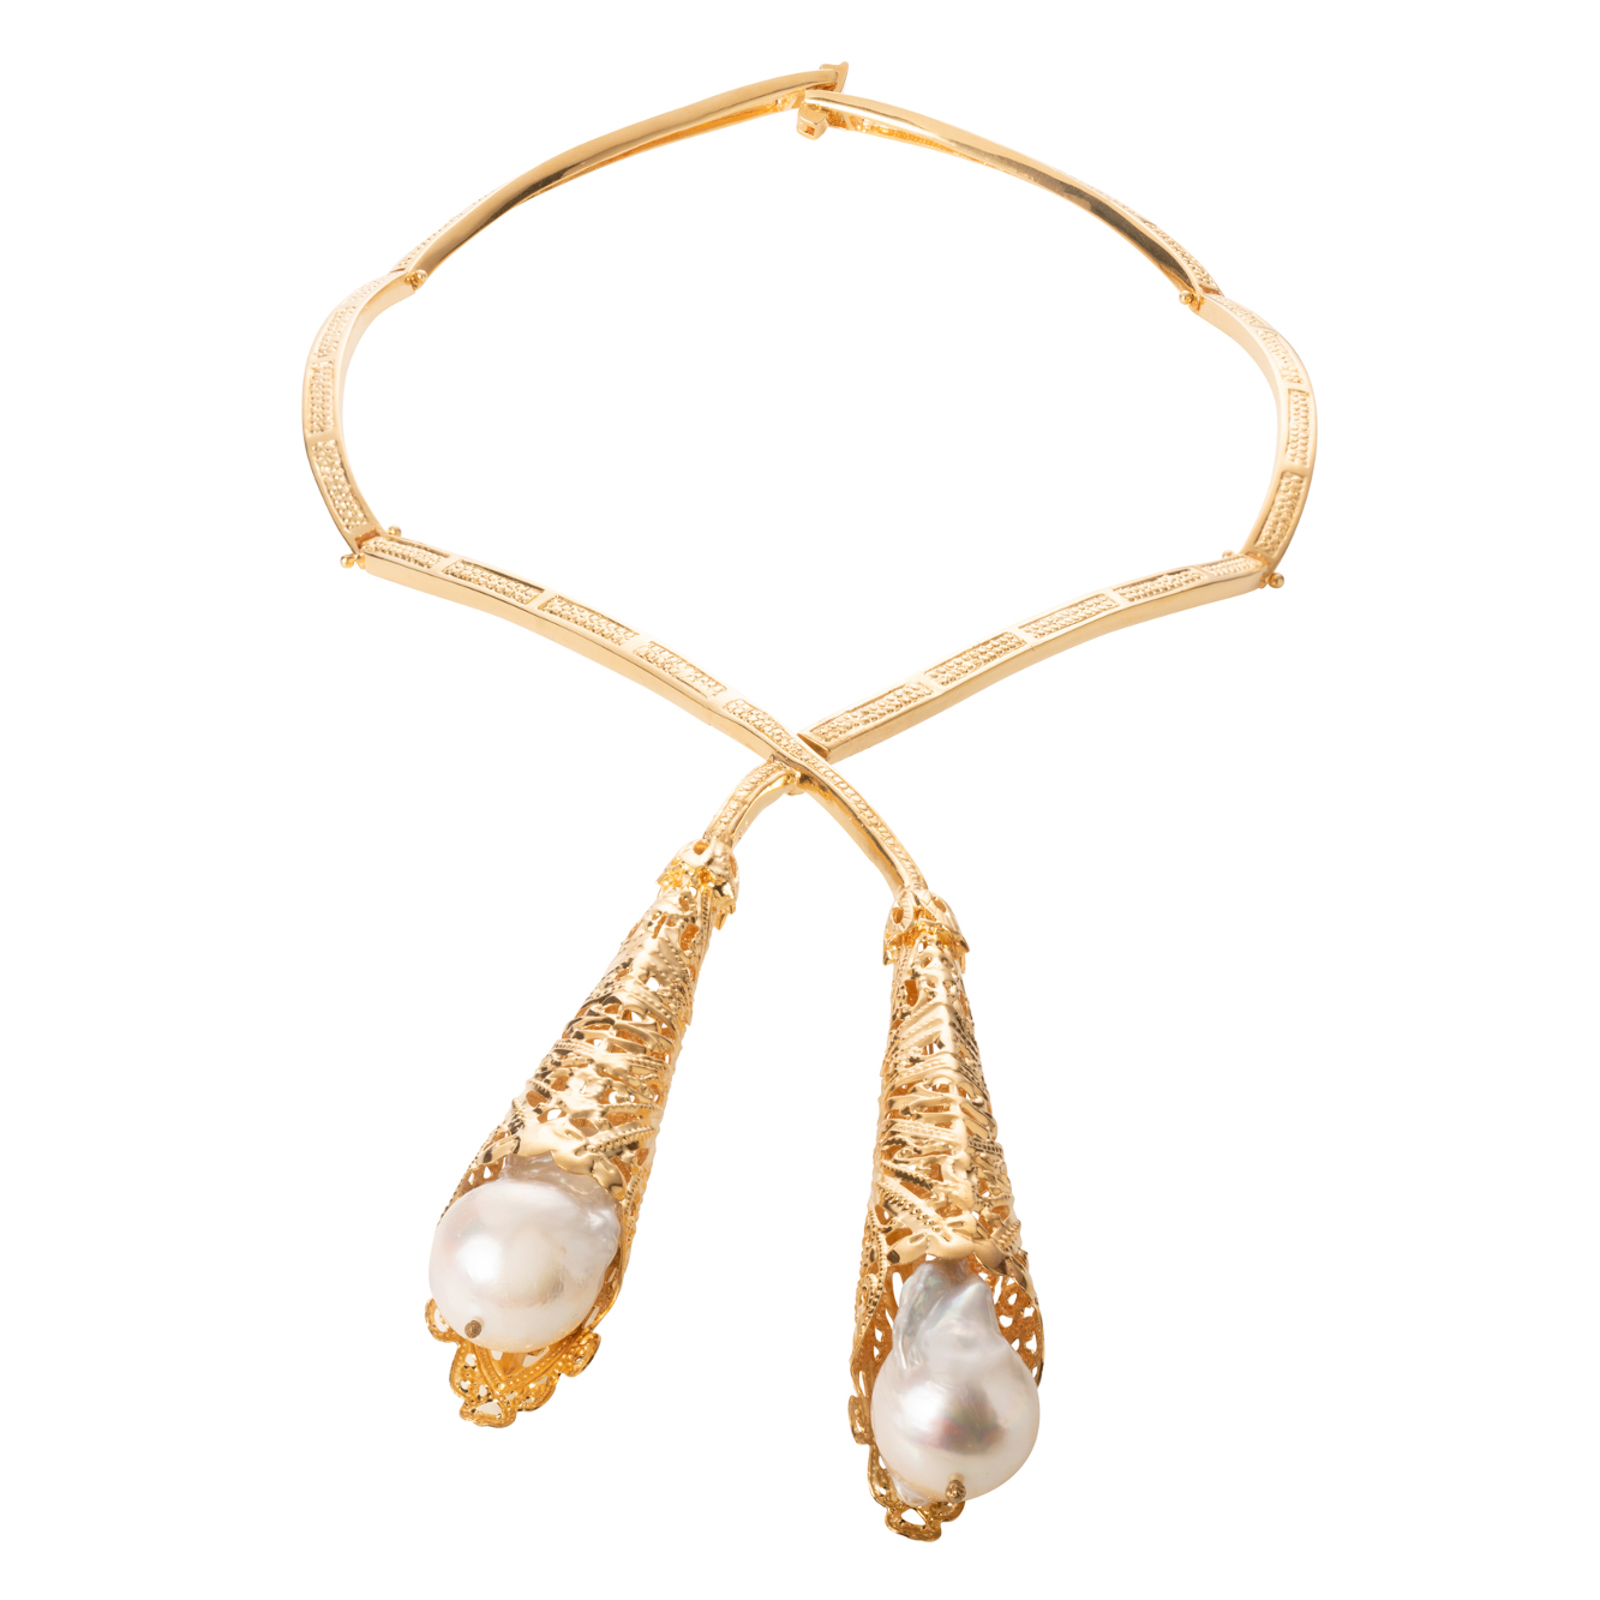 Collana semi-rigida realizzata a mano con perle barocche naturali